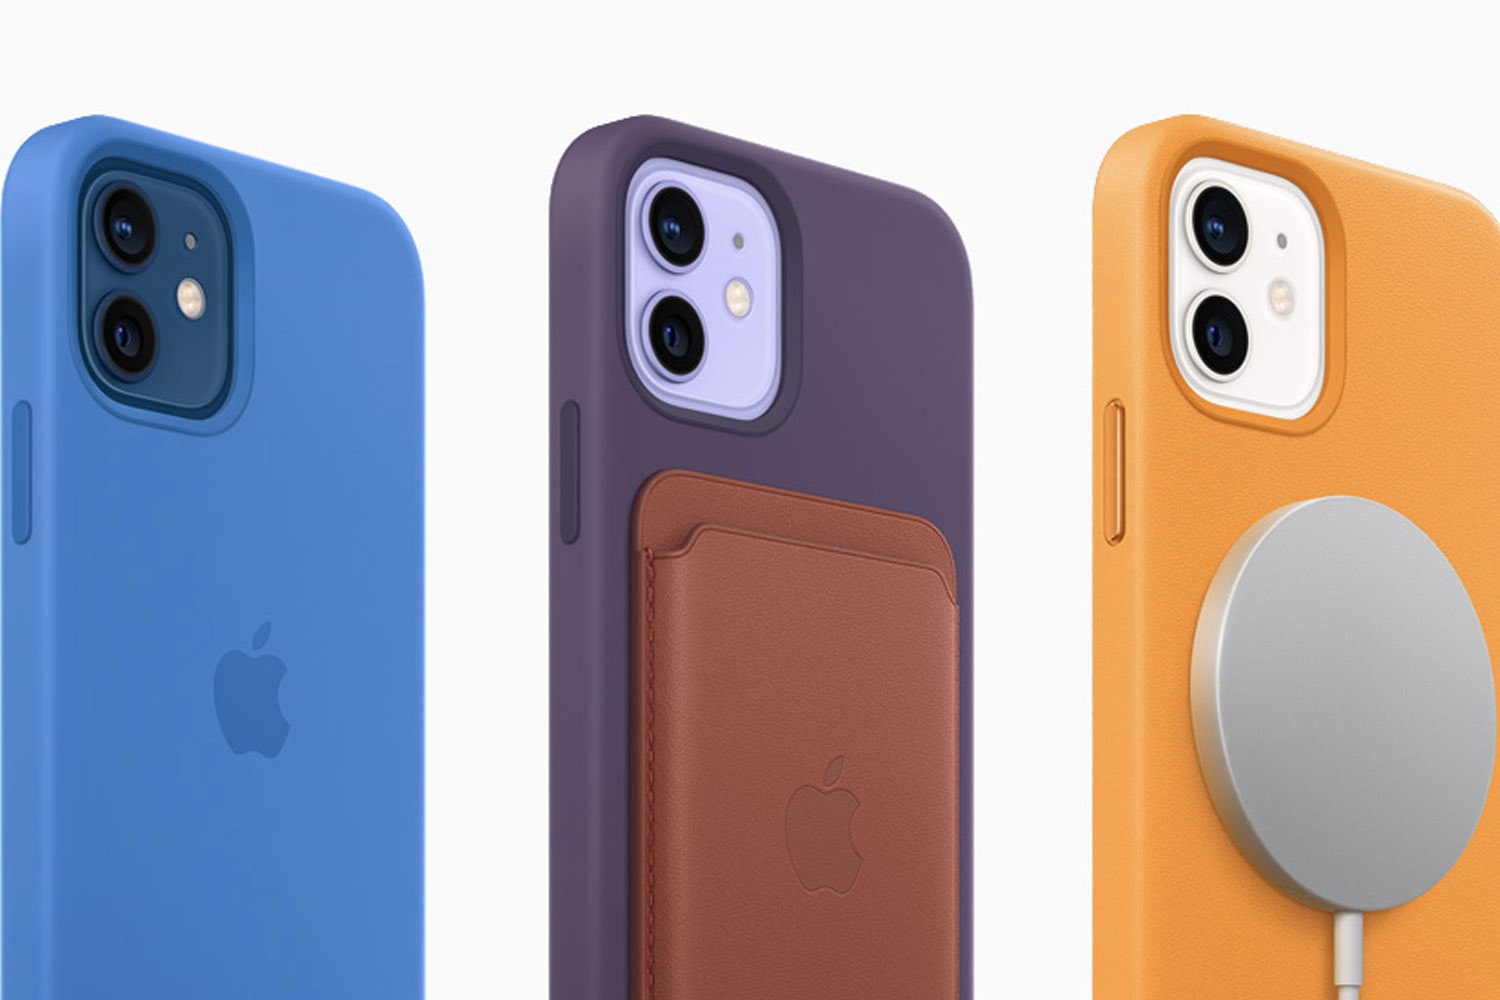 Apple 發佈會 − Apple 正式為 iPhone 12 與 iPhone 12 mini 推出全新「紫色」機型